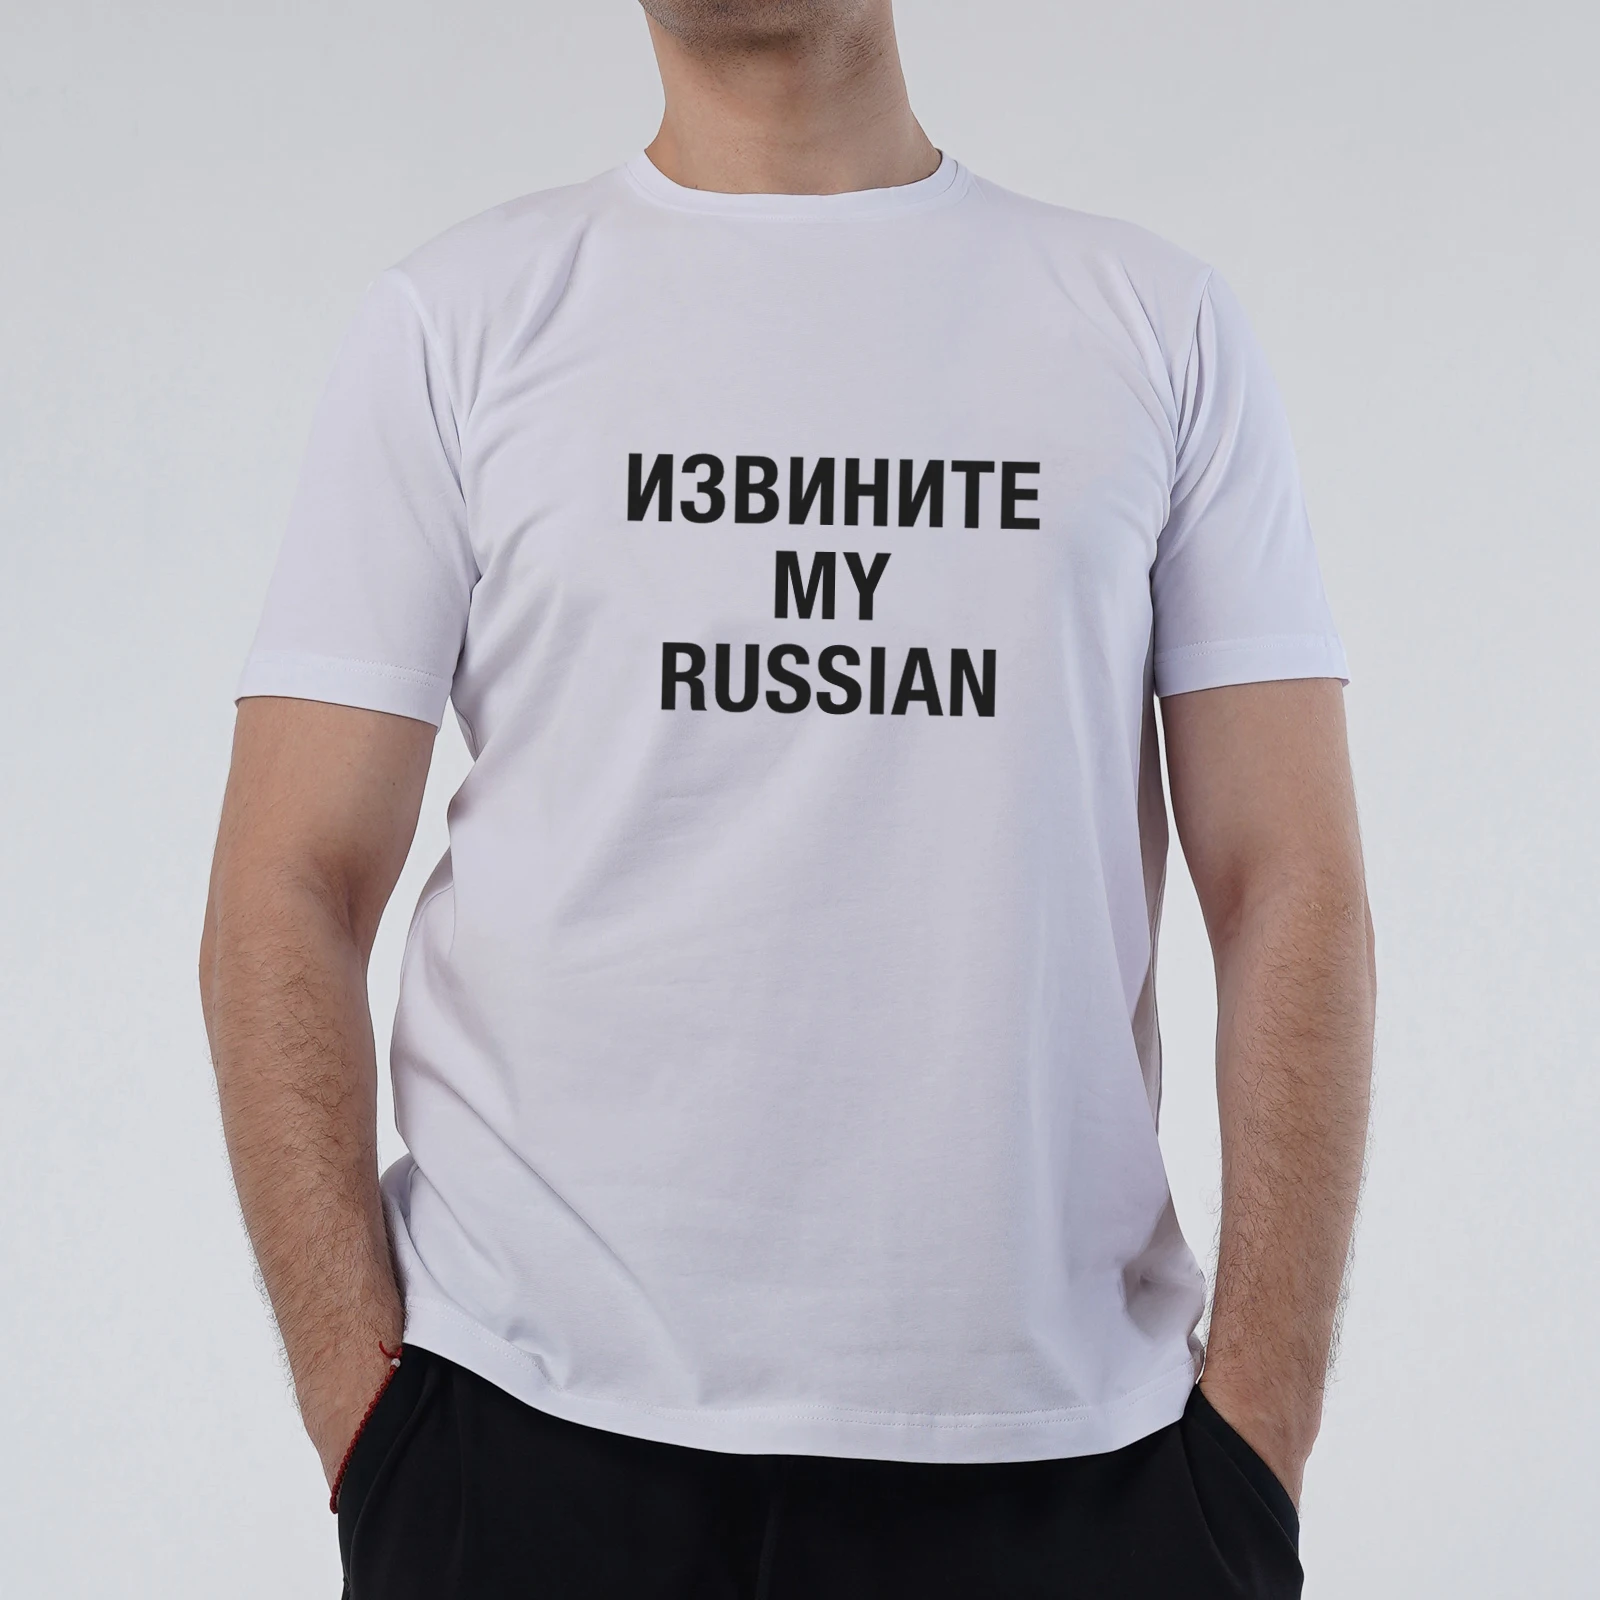 

Мужские футболки мужской футболка с коротким рукавом, с о-образным вырезом на шее, повседневное модное 100% хлопковые топы на русском: извинит...